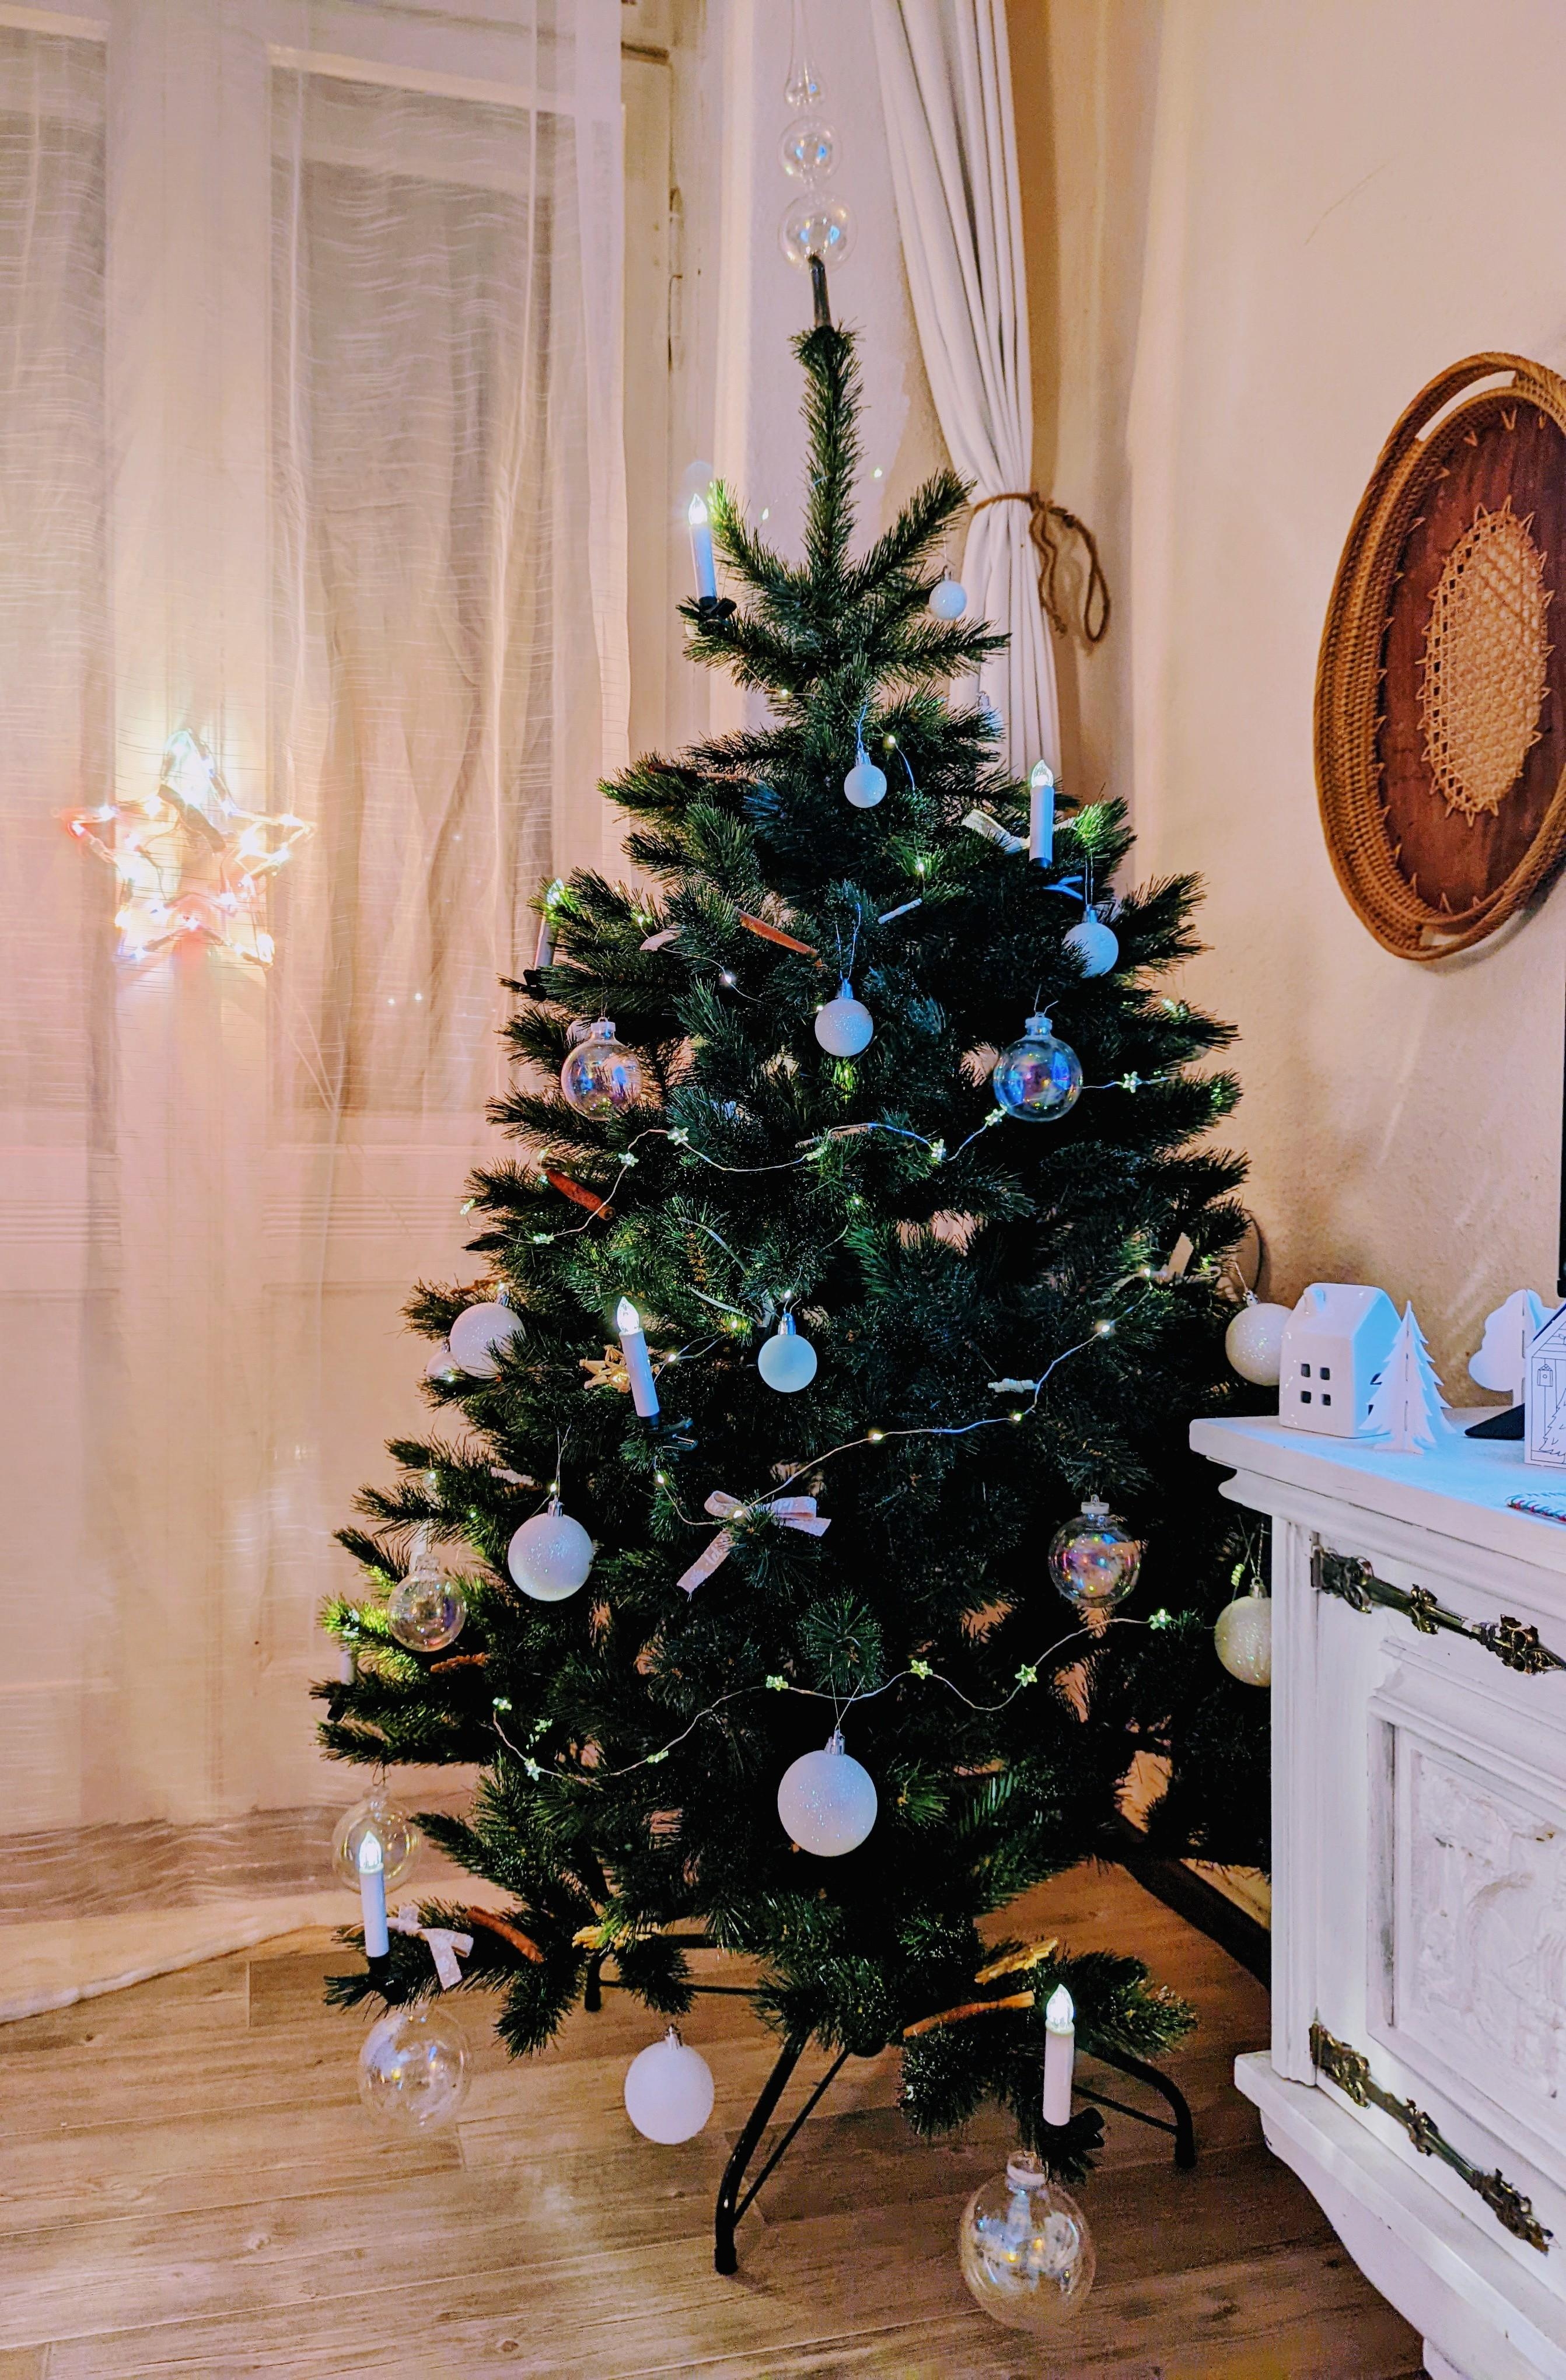 Dieses Weihnachten ist alles anders, aber der Baum steht schon für dich. Du fehlst. 🖤